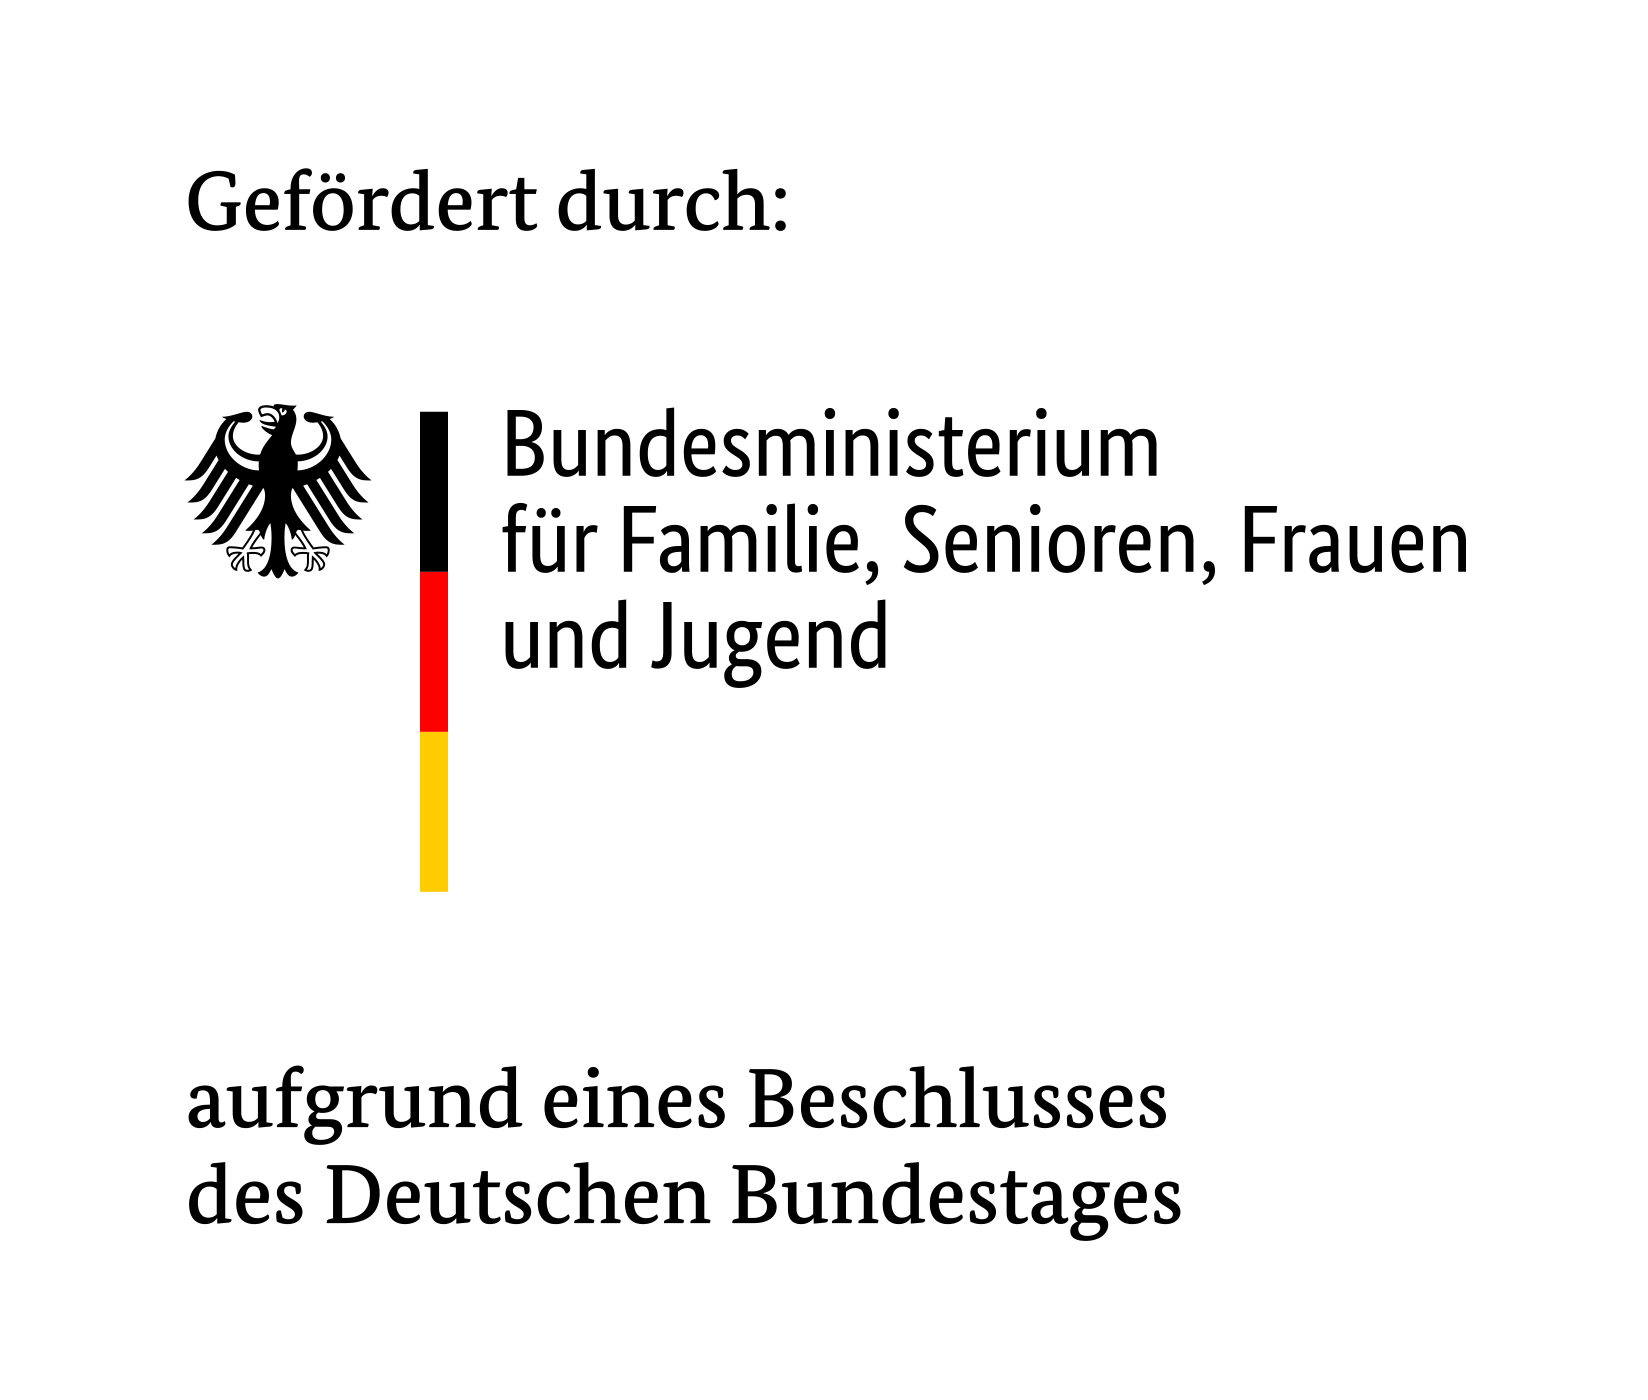 Gefördert durch: Bundesministerium für Familie, Senioren, Frauen und Jugend aufgrund eines Beschlusses des Deutschen Bundestages